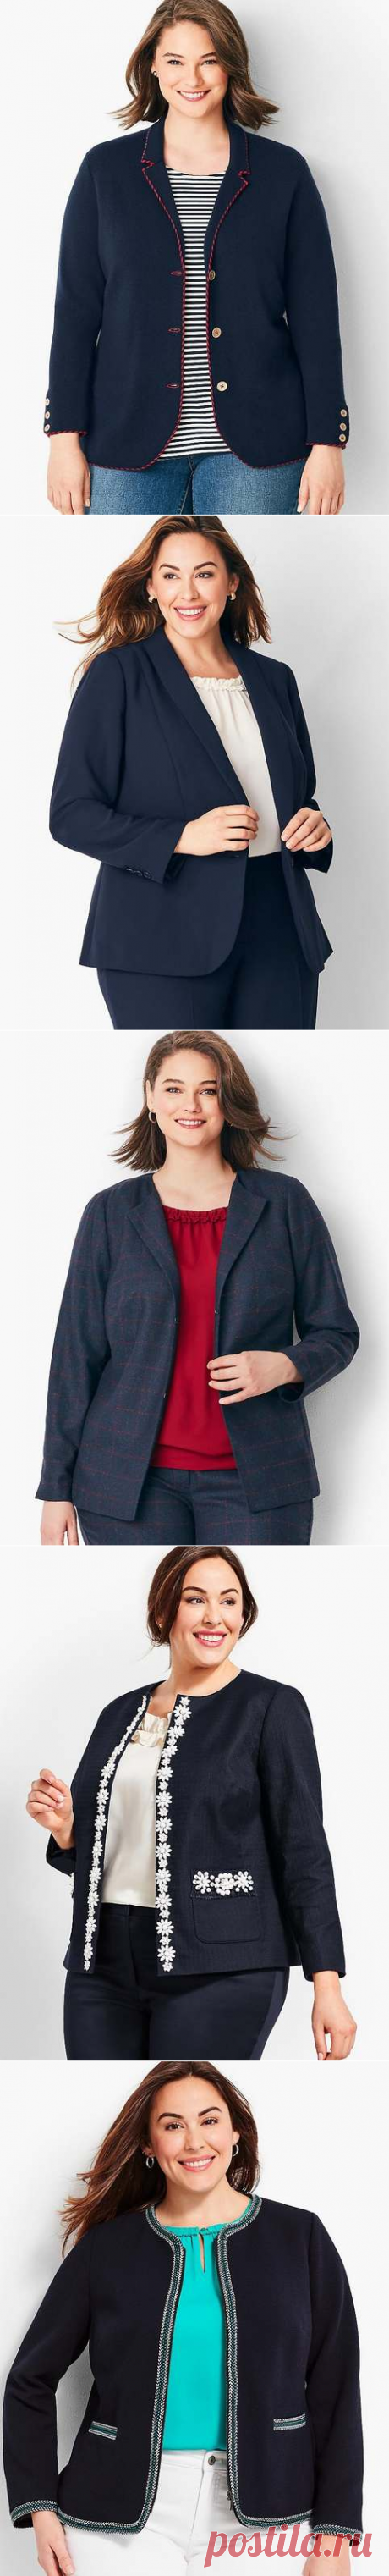 Жакеты и пиджаки для полных девушек и женщин американского бренда Talbots осень 2018 (60 фото)